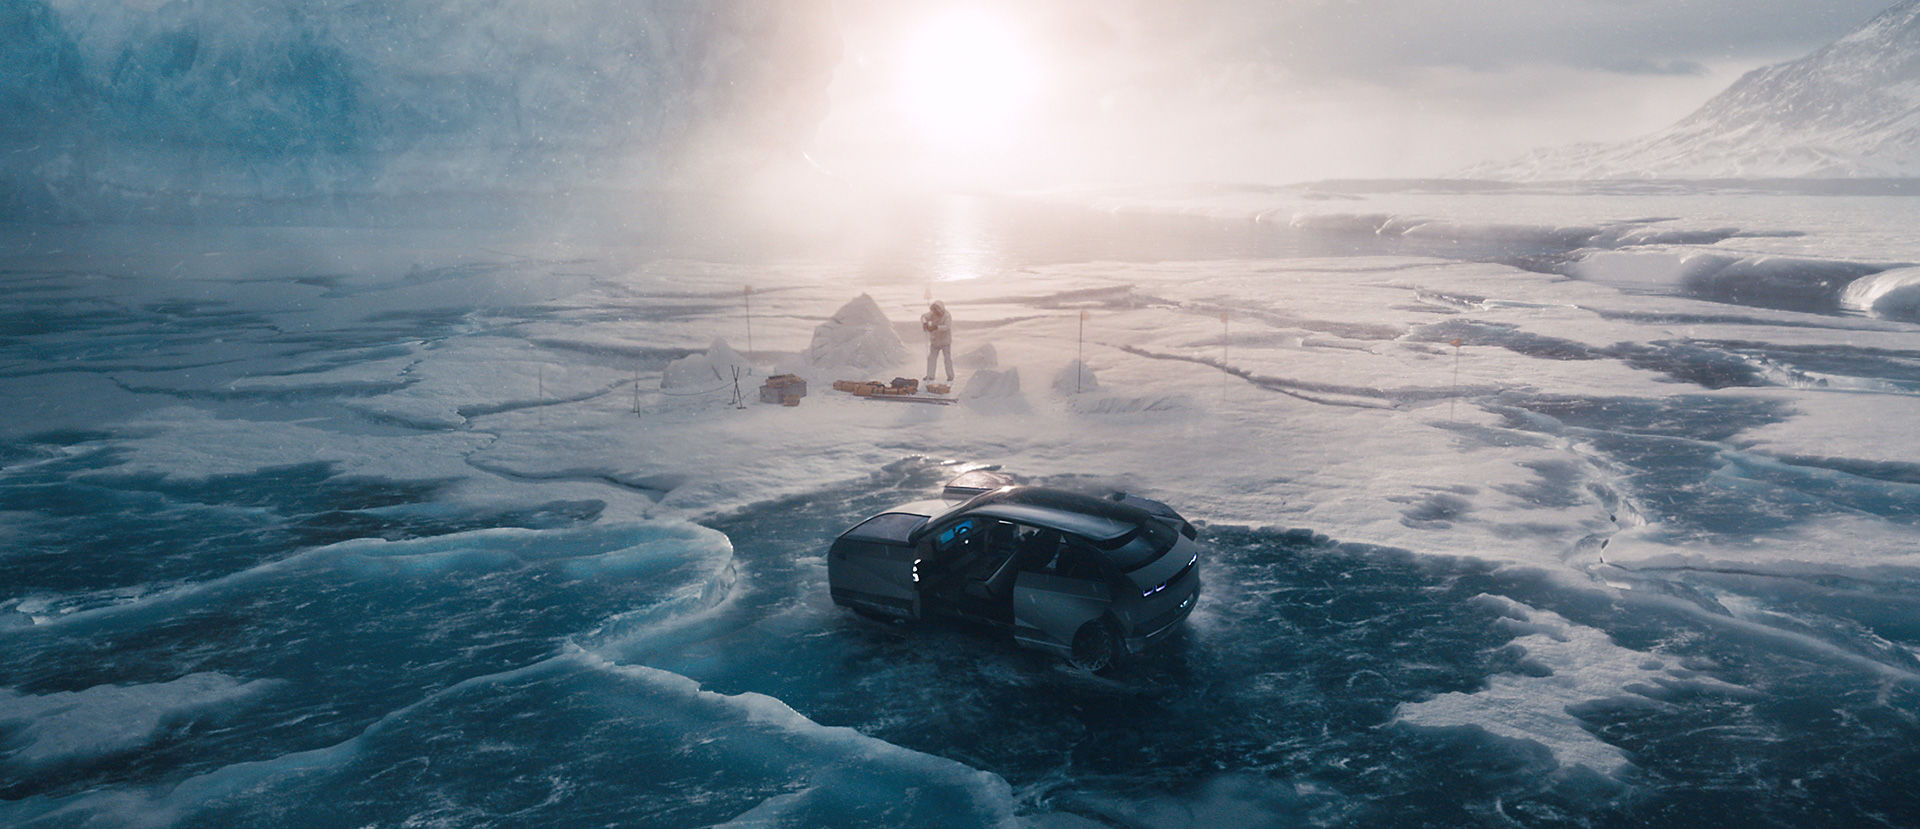 빙하 위에 아이오닉 5가 정차되어 있다 그 주변에 한 사람이 작업을 하고 있다